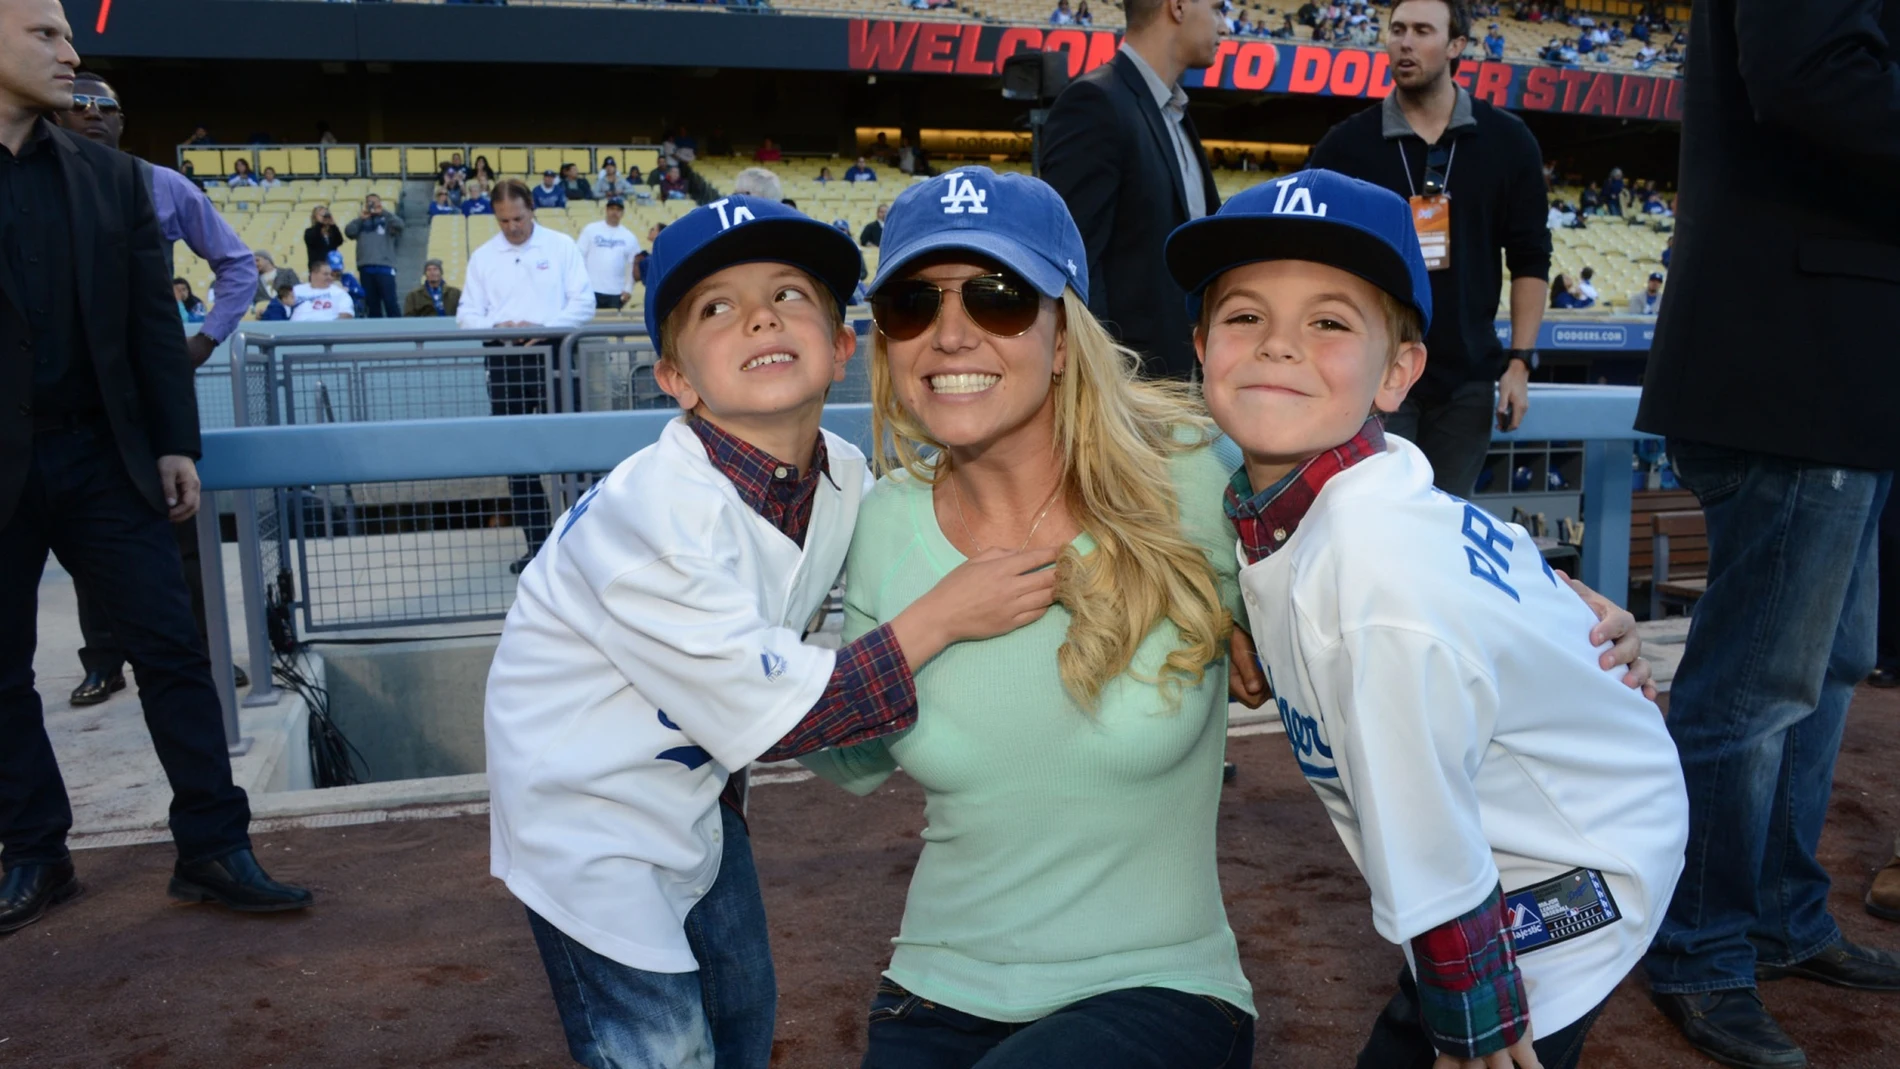 Britney Spears se reconcilia con sus hijos